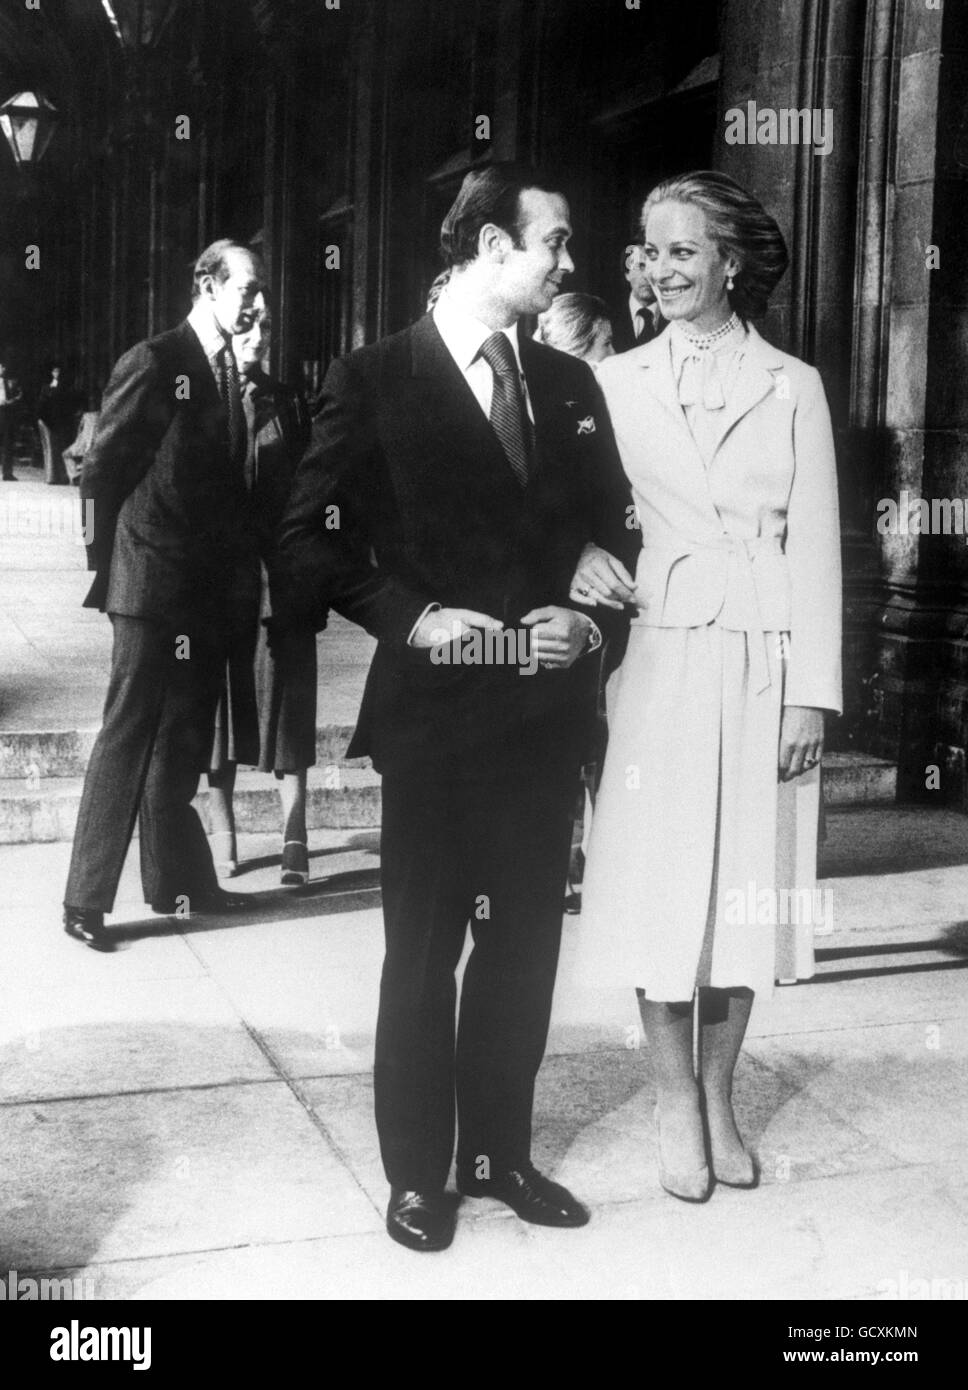 Il principe Michael di Kent sposò la baronessa Marie-Christine von Reibnitz in una cerimonia civile presso il municipio di Vienna. Foto Stock